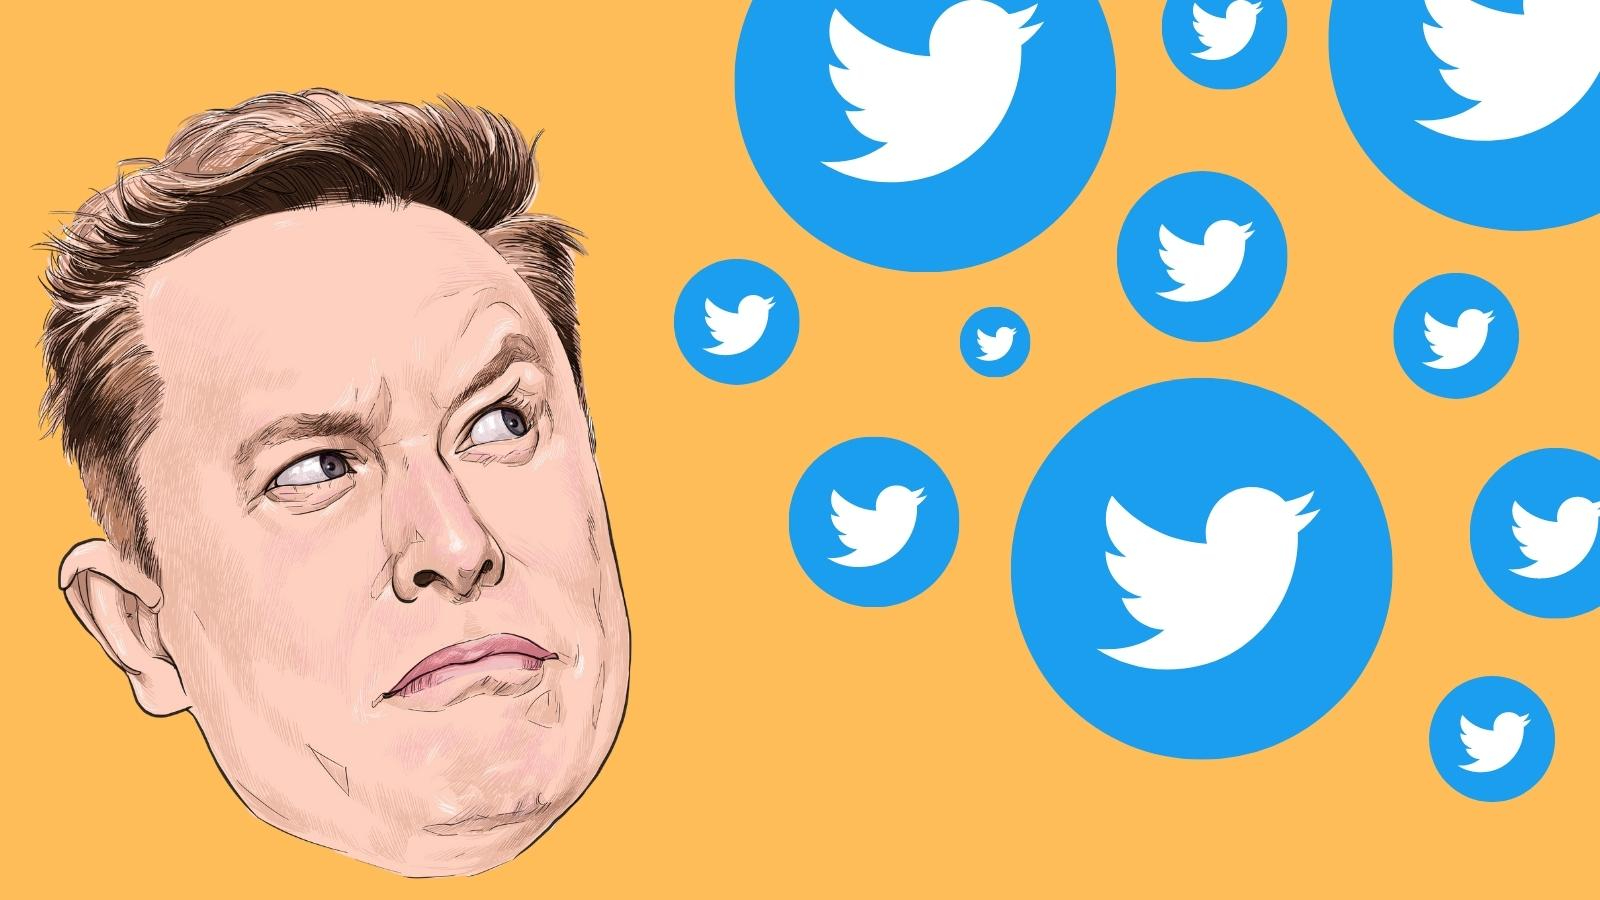 Ilustrasi Elon Musk yang digambar oleh thongyhod tampak bingung dengan jatuhnya logo Twitter